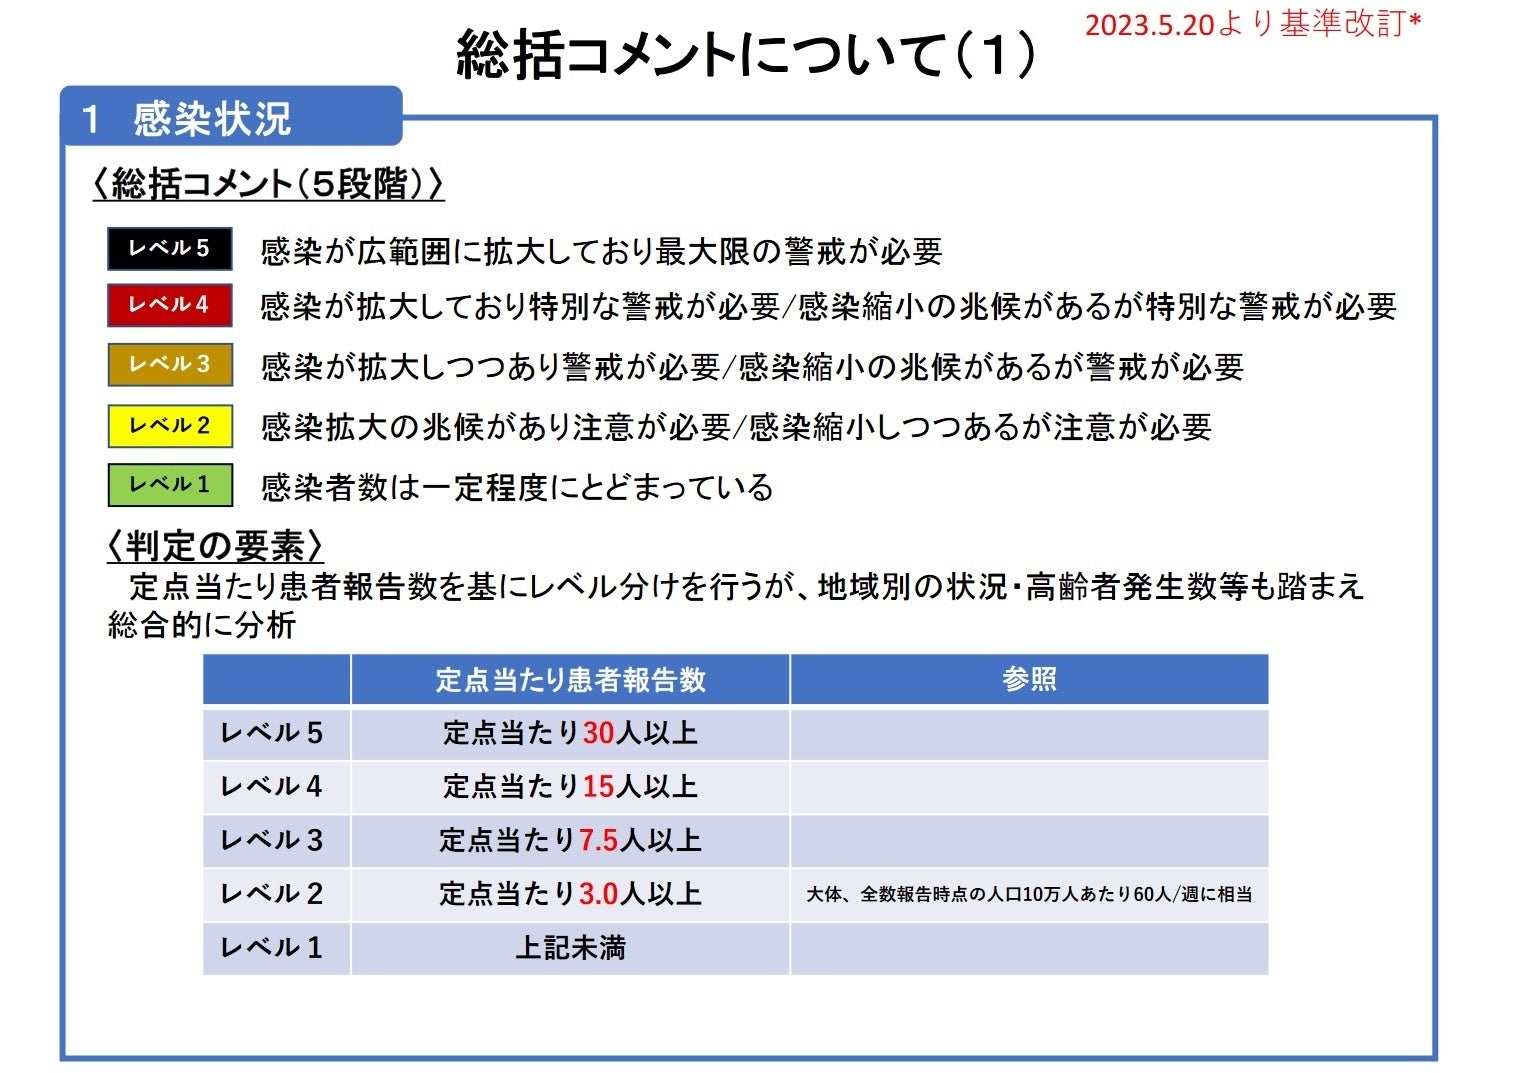 【岡山大学】岡山県内の感染状況・医療提供体制の分析について（2023年10月20日現在）